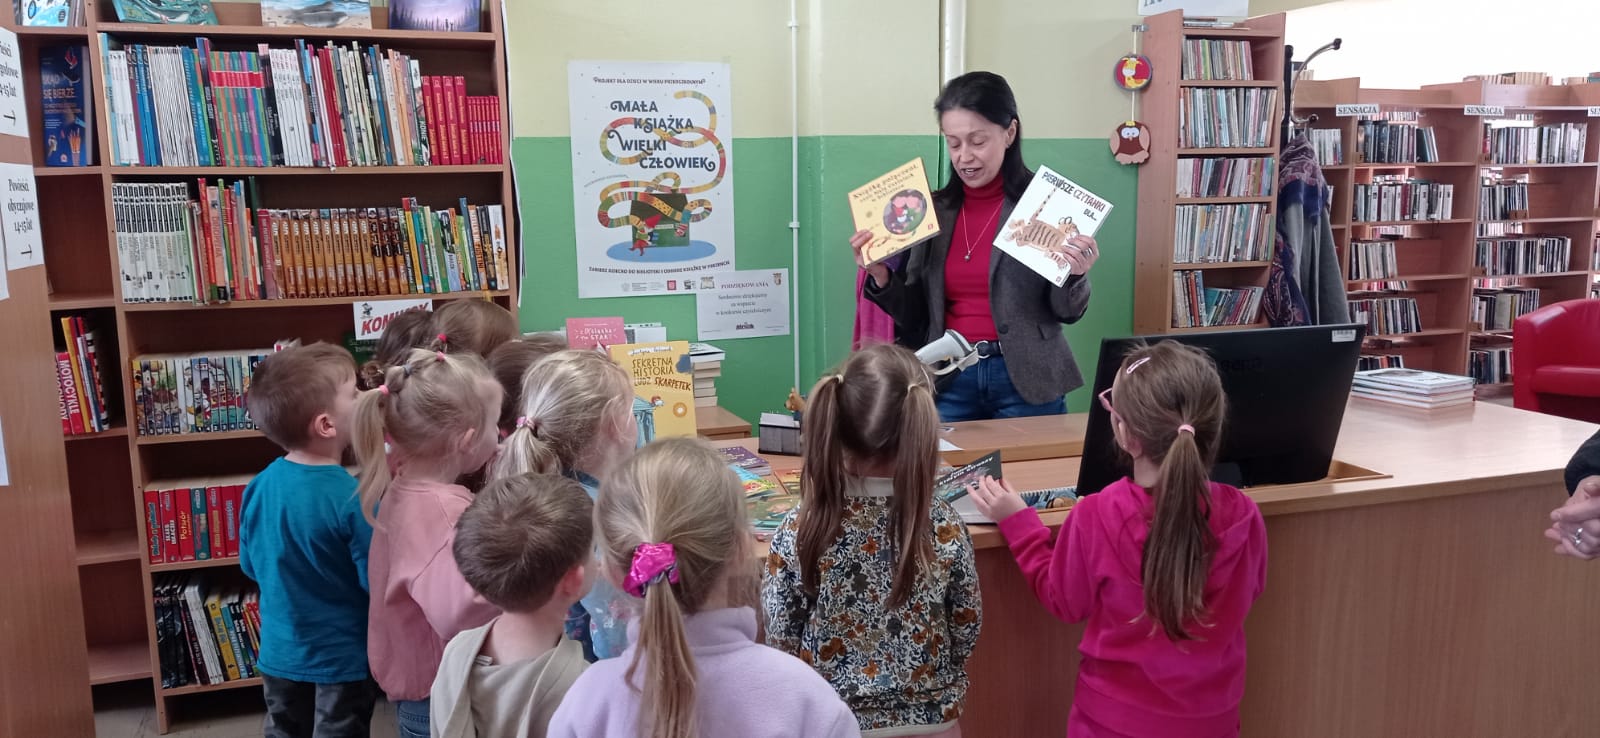 Dzieci słuchają o projekcie Mała Książka Wielki Człowiek